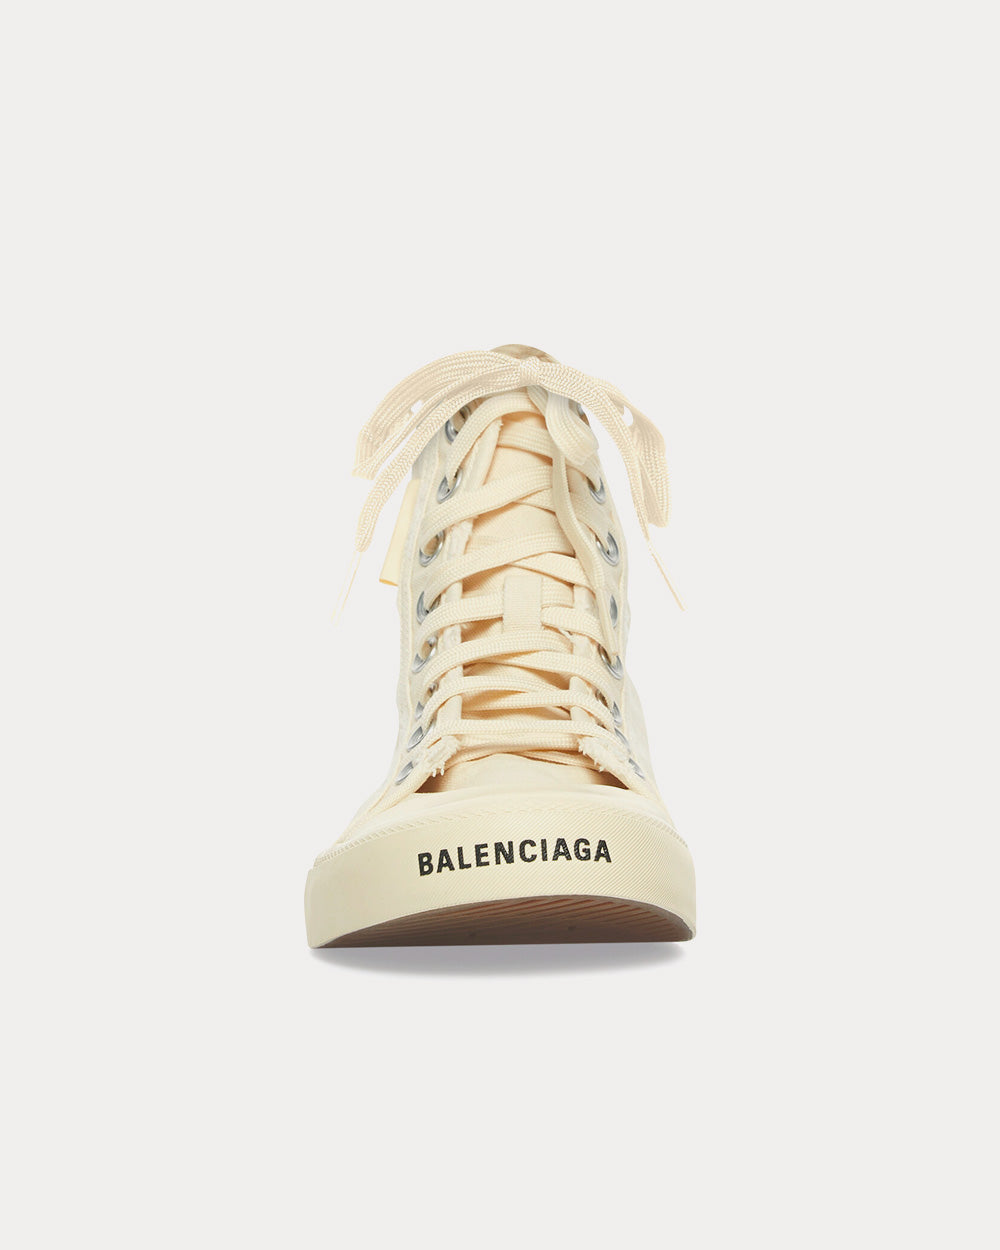 Balenciaga - Paris White High Top Sneakers